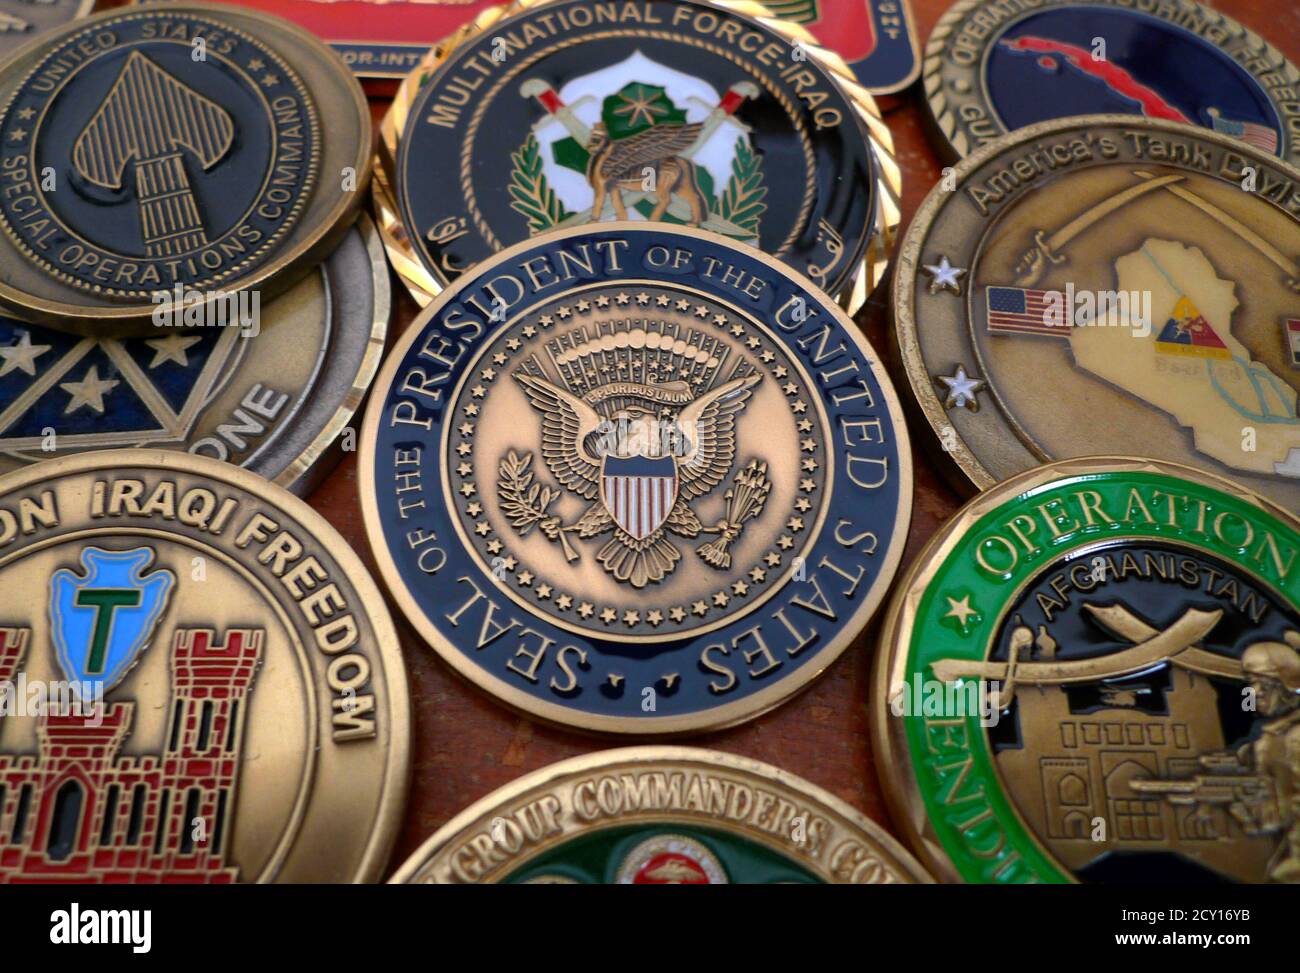 Marine Vietnam Medals Challenge Coin 